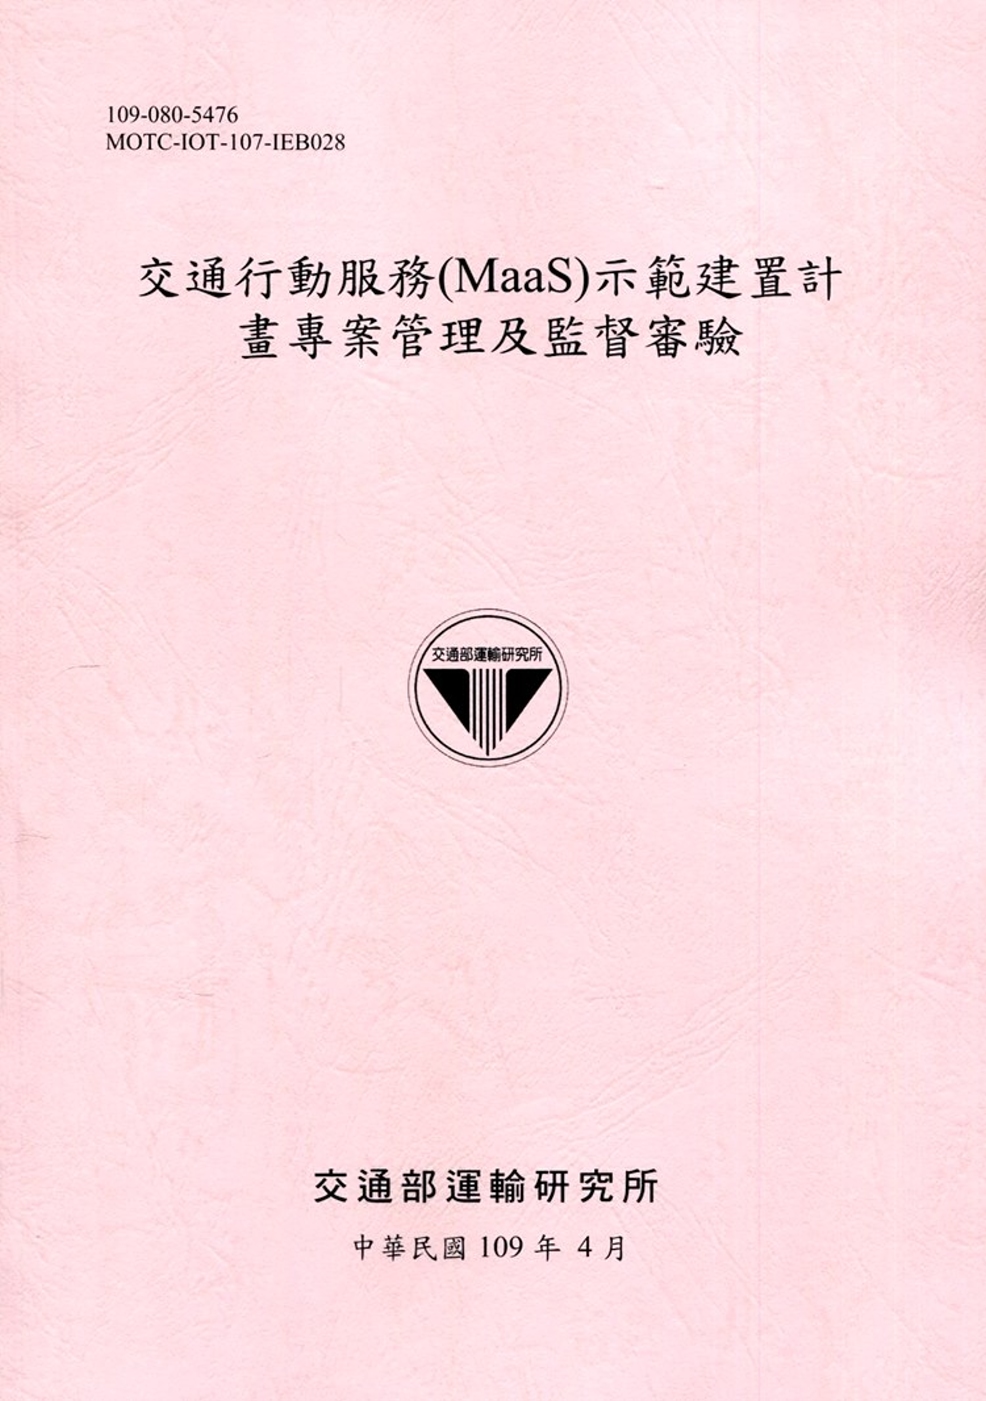 交通行動服務（MaaS）示範建置計畫專案管理及監督審驗[109粉紅]